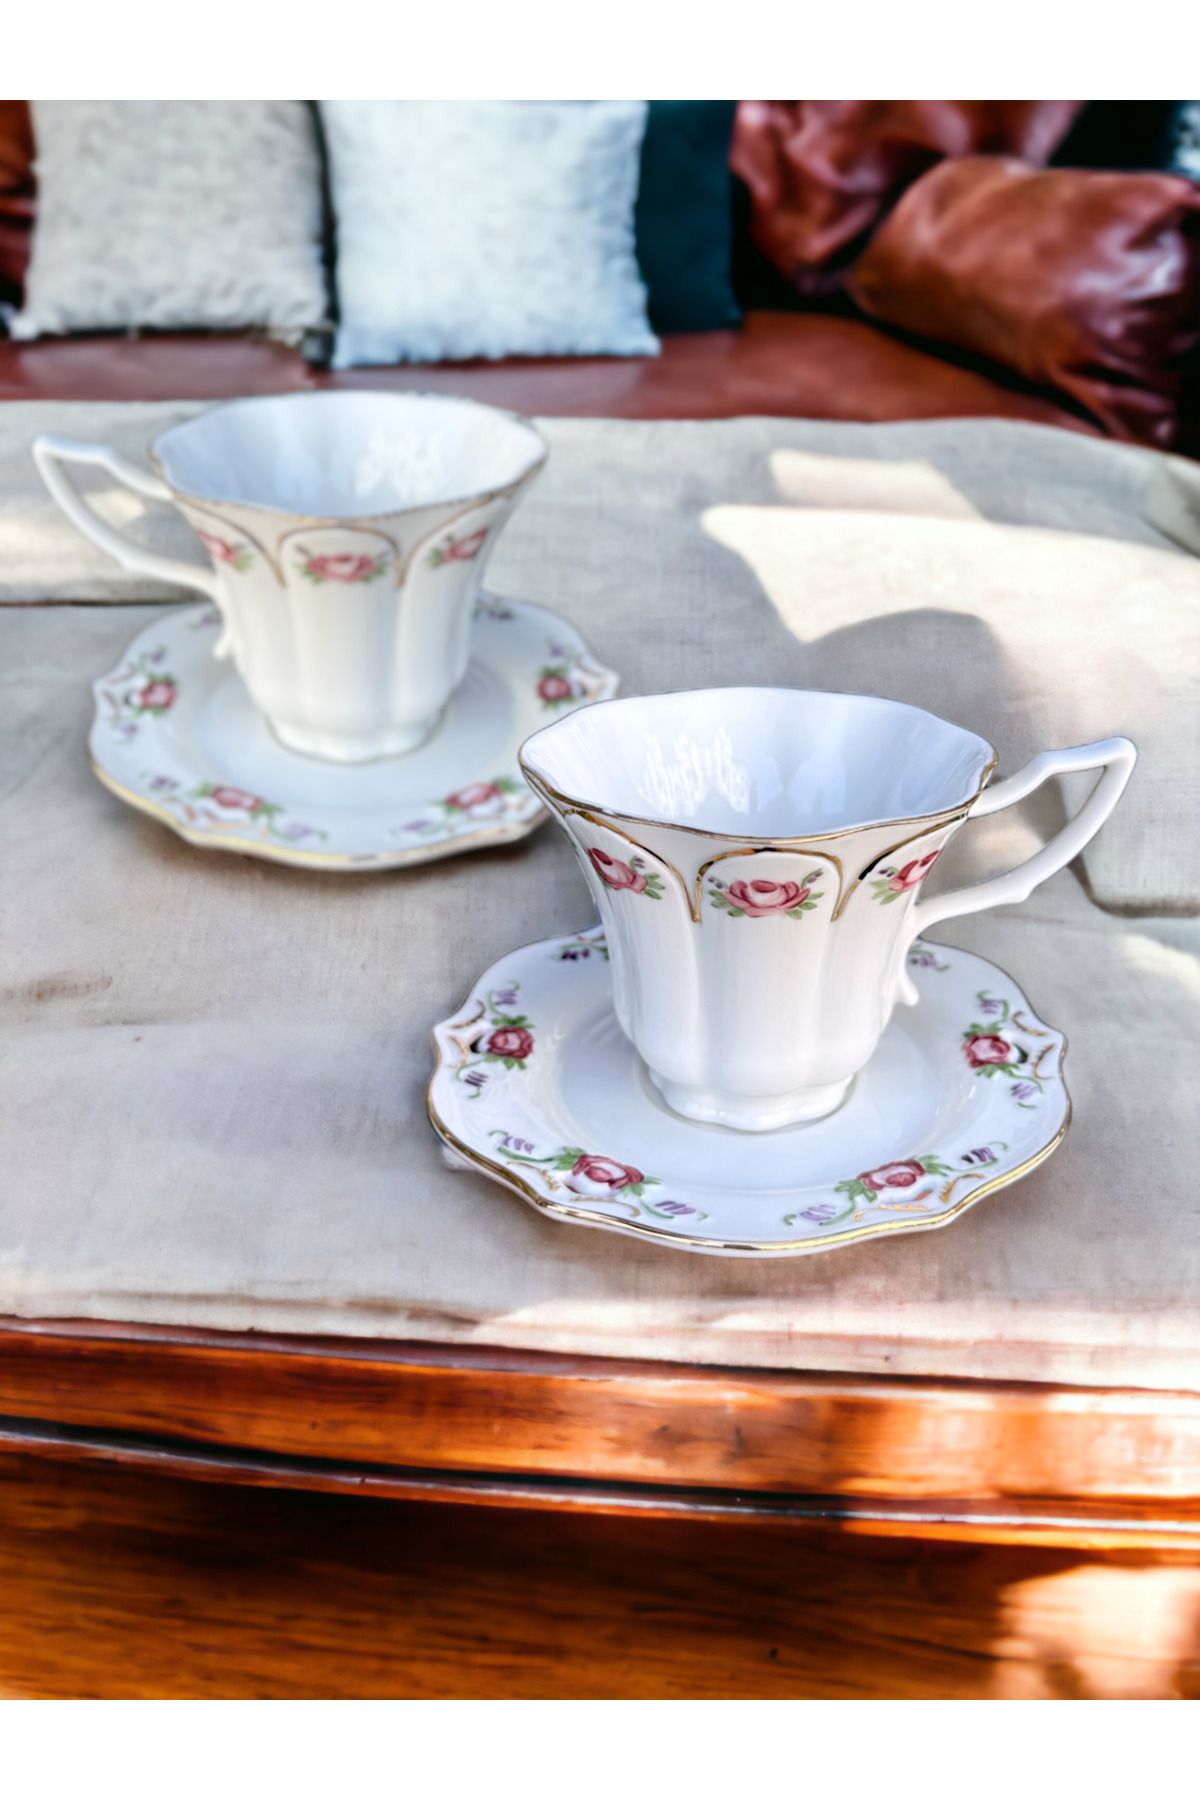 NADY STUDIO Vinci 2li set Vintage Elyapımı Handmade Tasarım Çay Fincanı Kahve Kupa Altın işlemeli